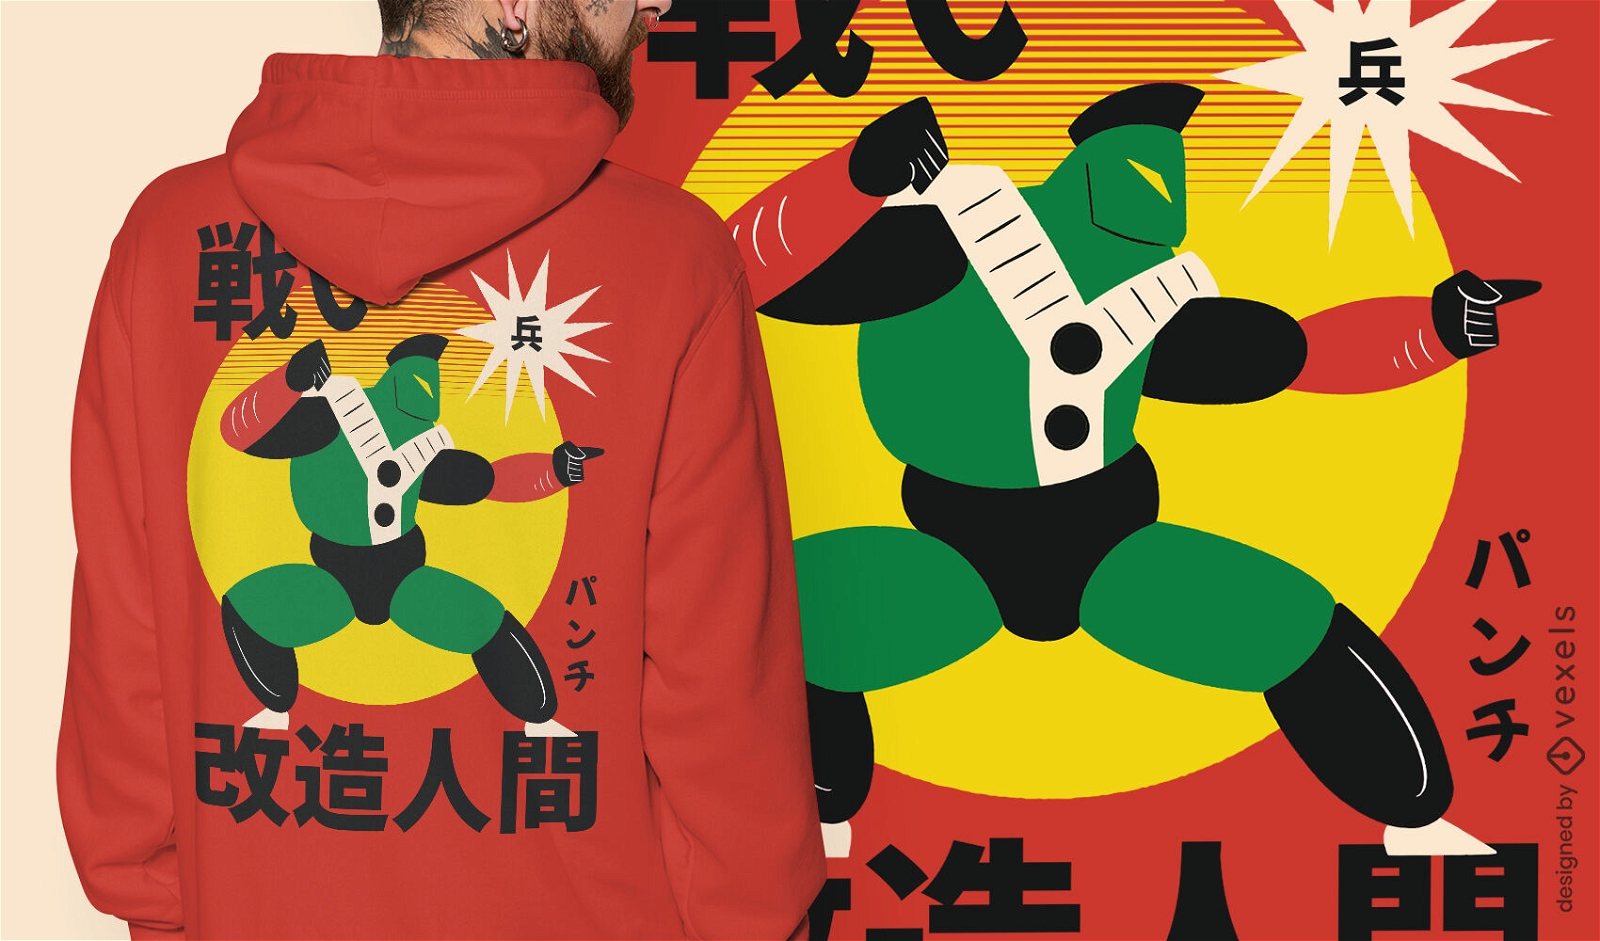 Gr?nes japanisches Roboter-Krieger-T-Shirt-Design